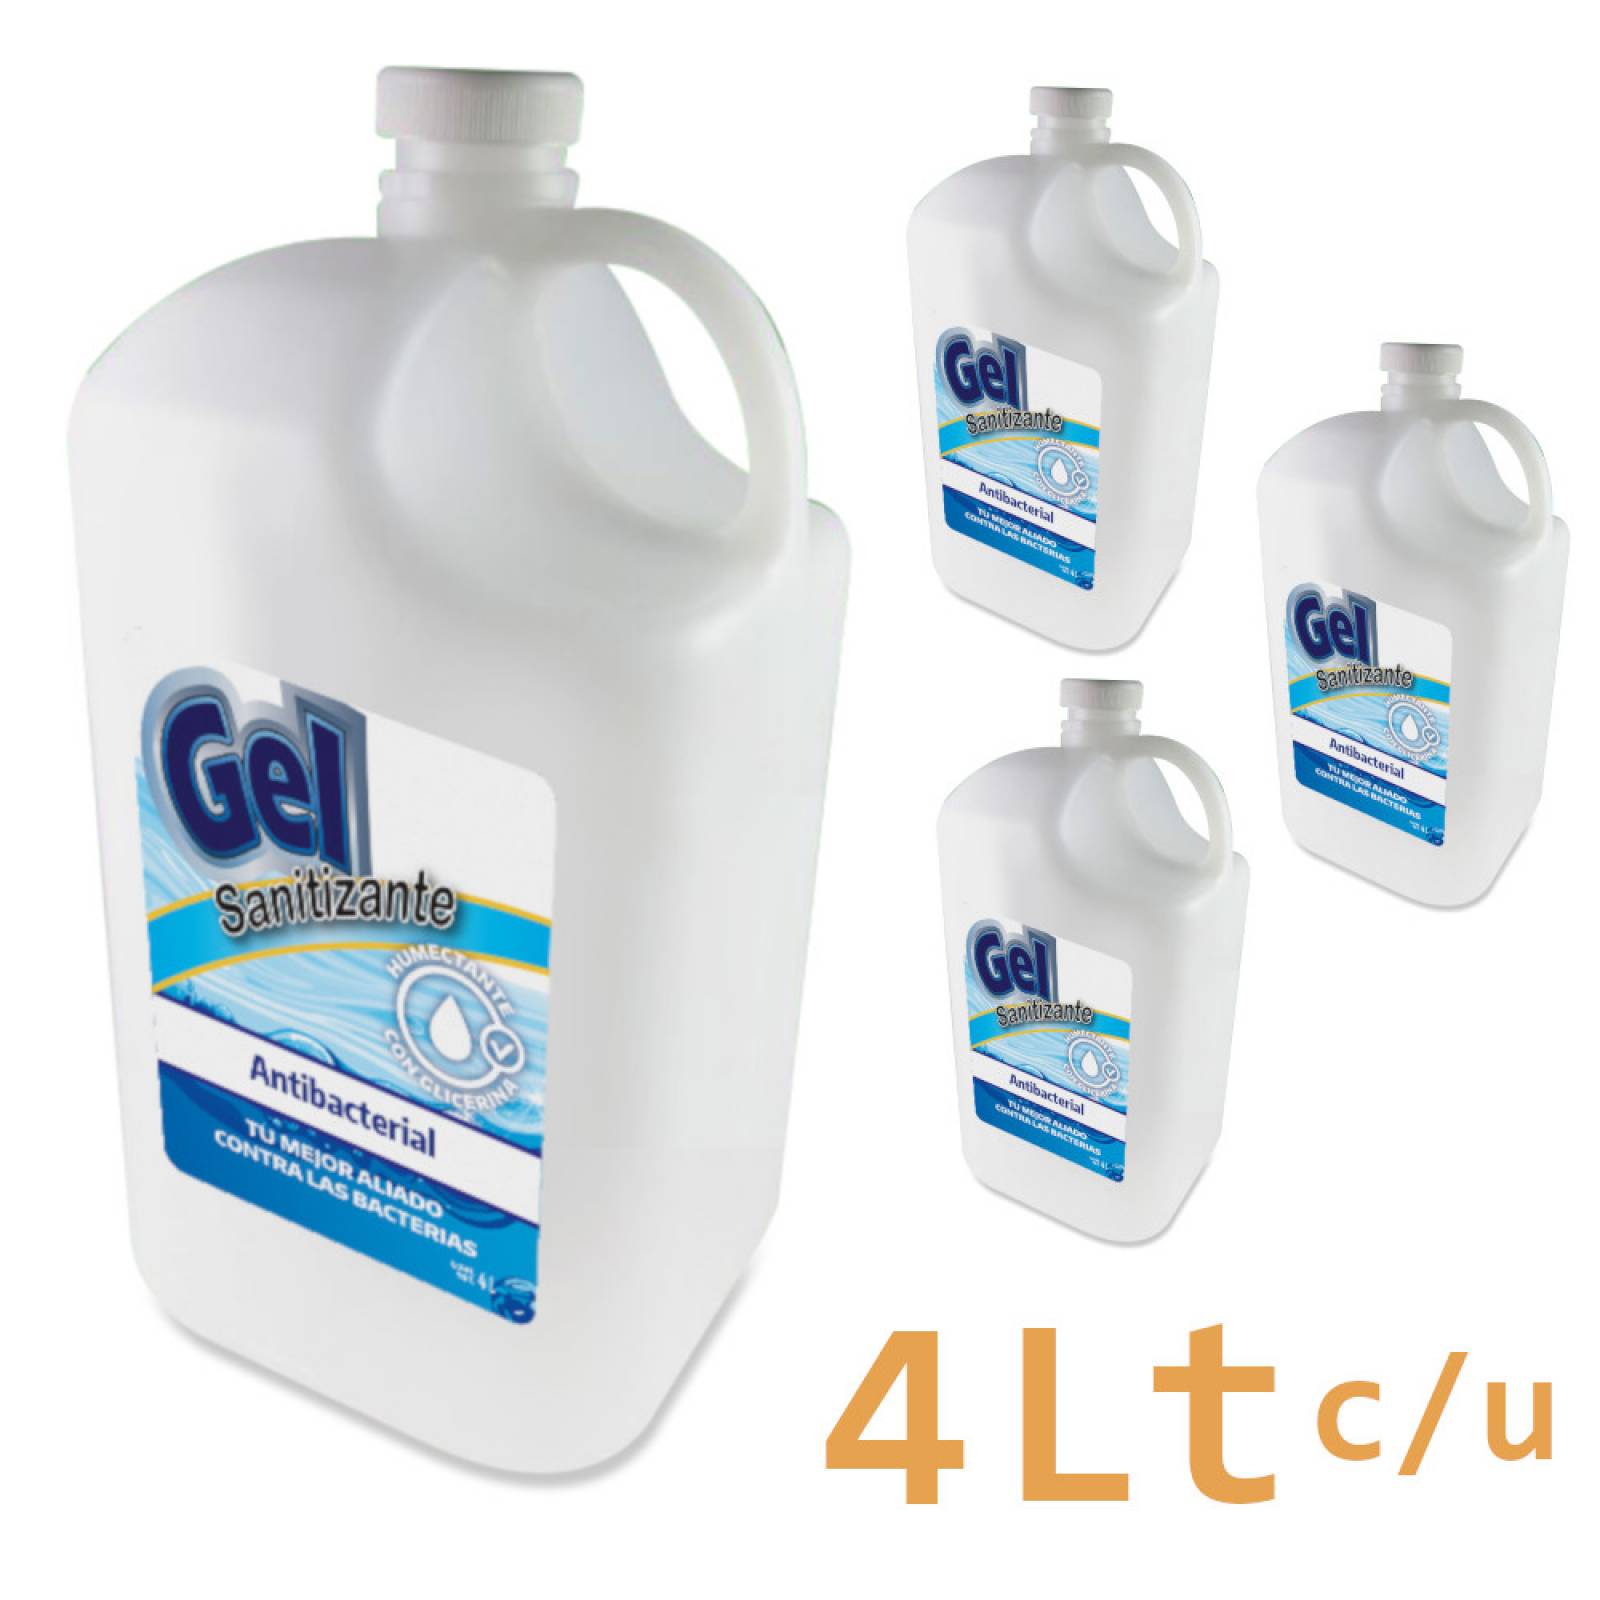 4 Piezas Gel Antibacterial 4 Lt para Limpieza de Manos con 70% de Alcohol sanitizante